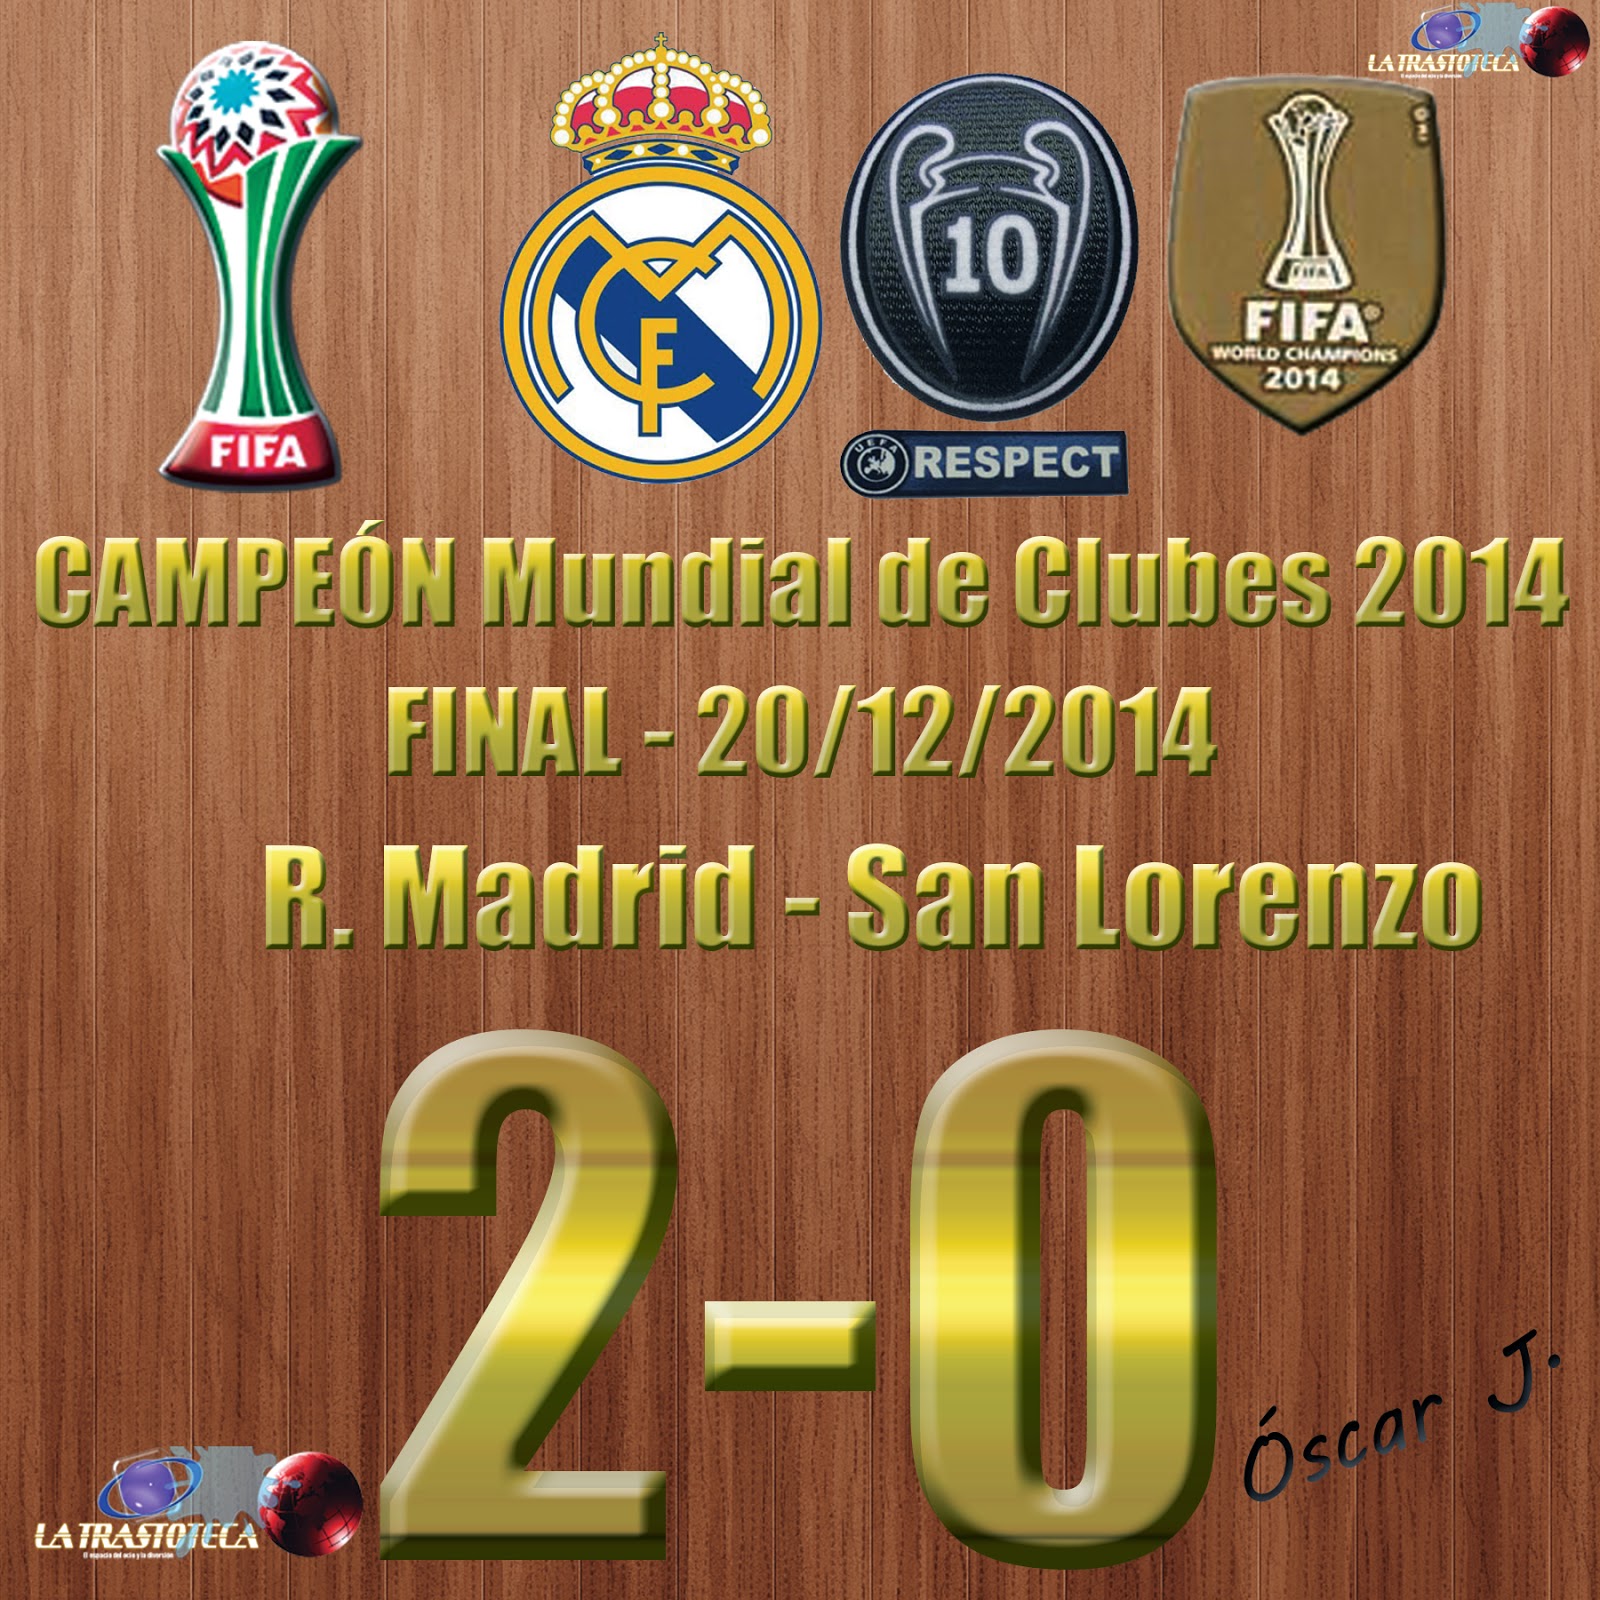 Gareth Bale 2 0 Real Madrid CampeÓn Del Mundo Real